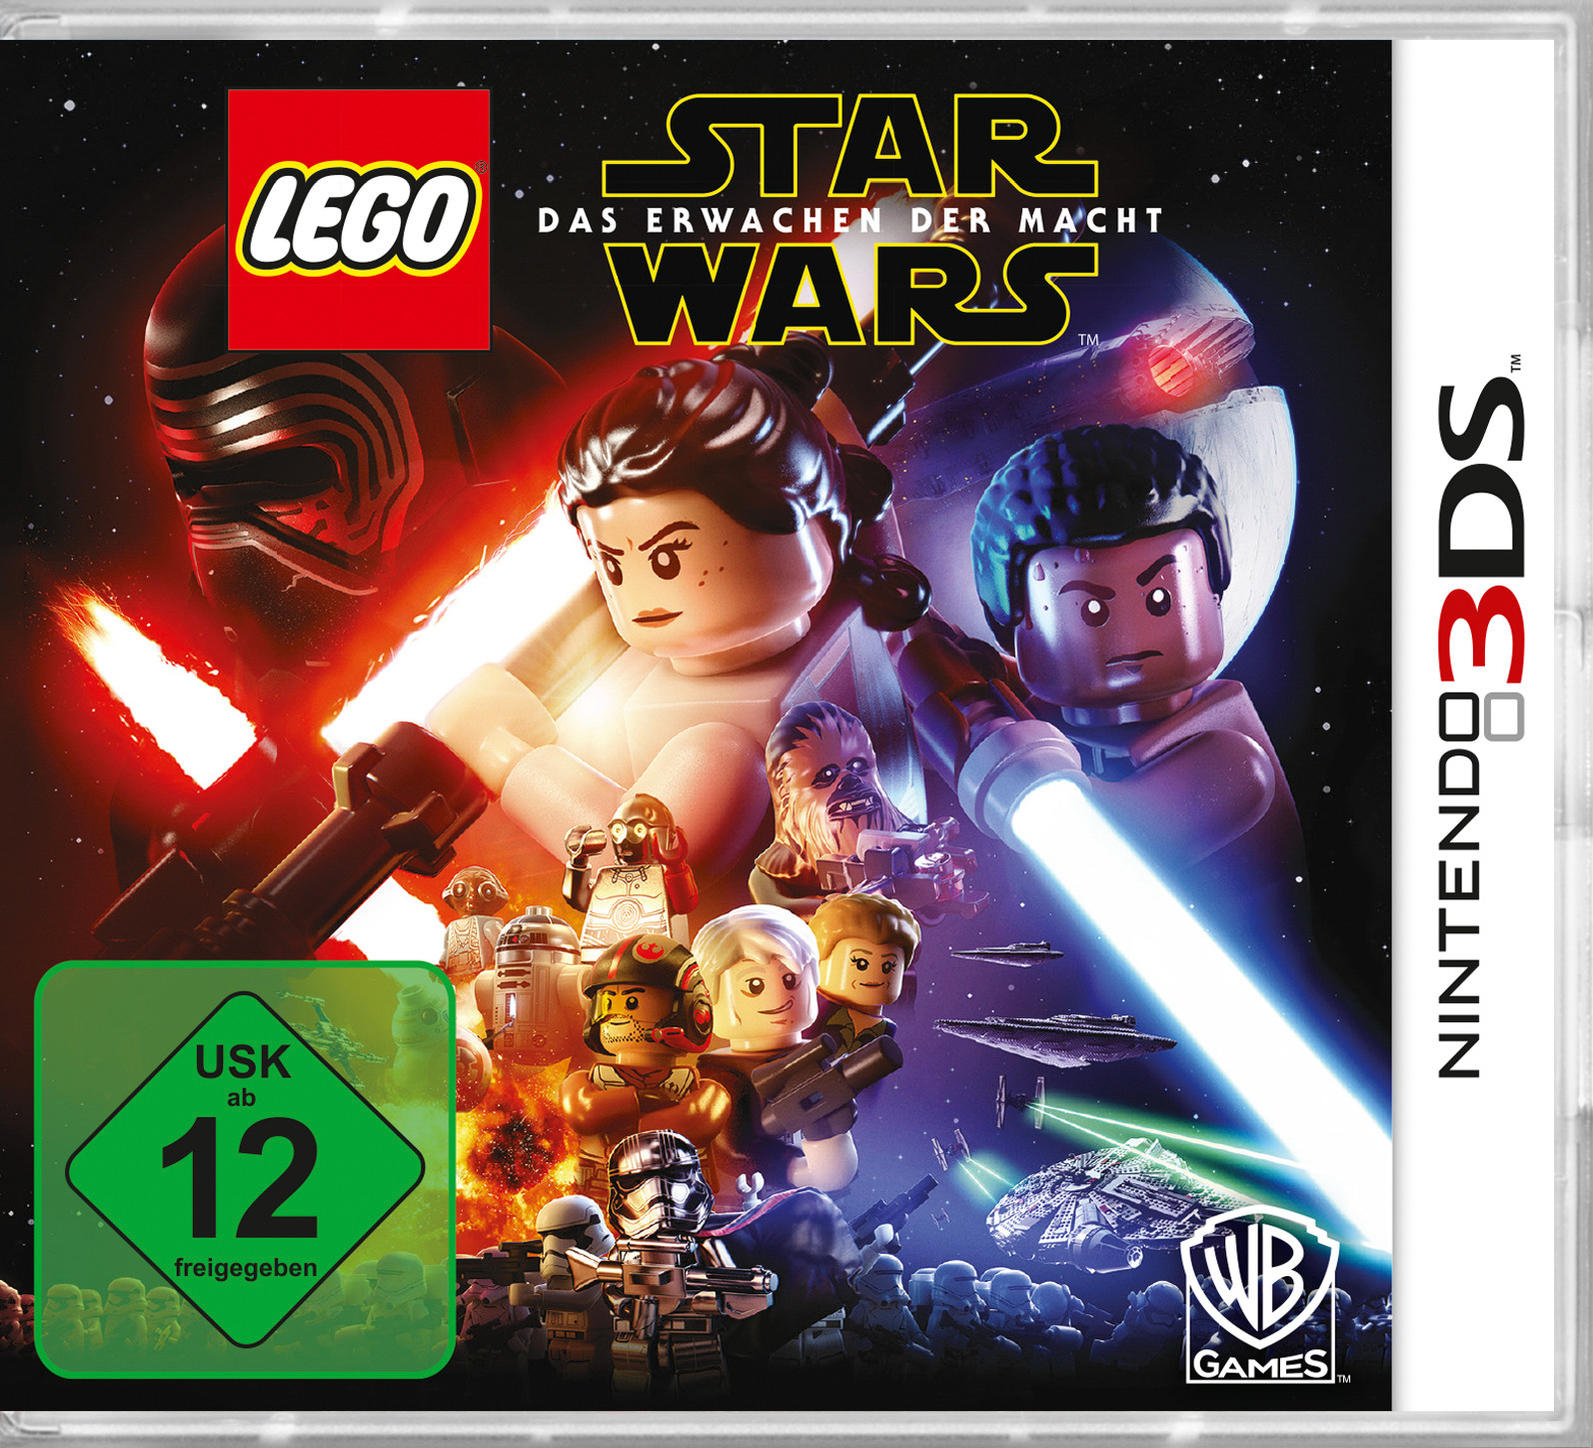 LEGO 3DS] - DER 3DS [Nintendo STAR WARS-DAS ERWACHEN MACHT